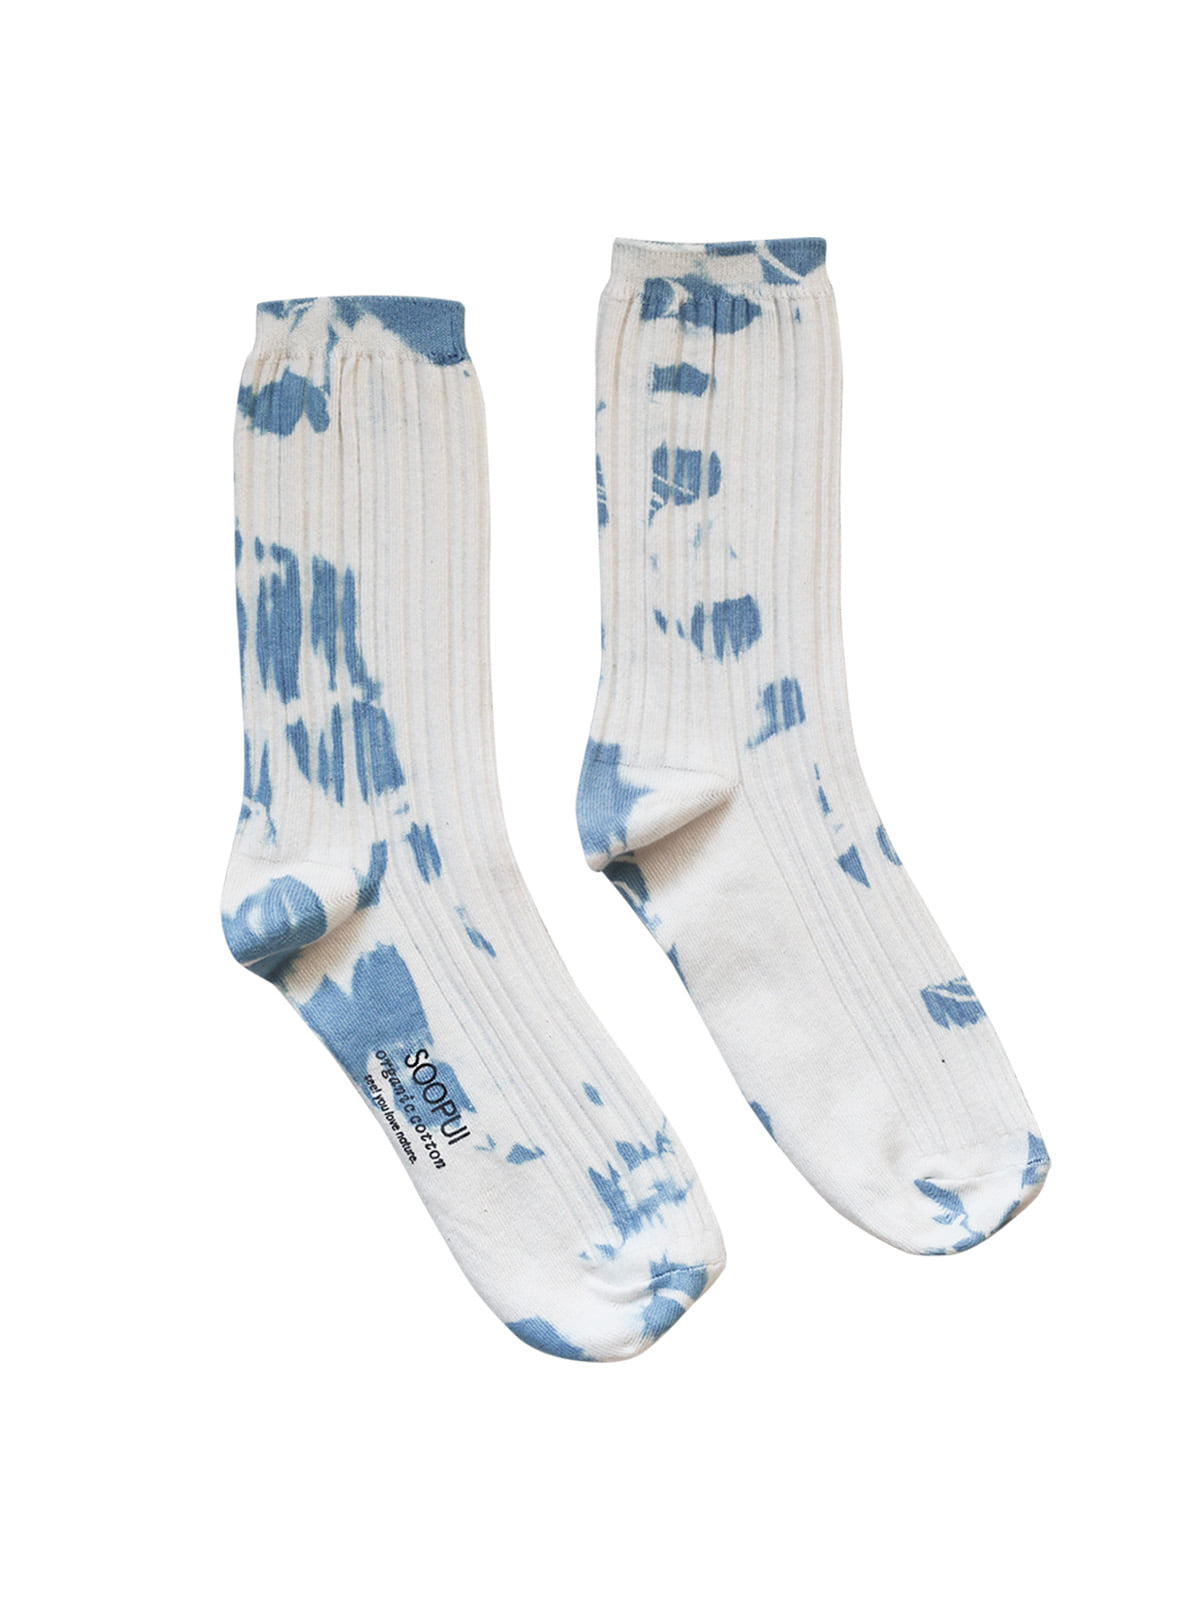 Plants tie-dye socks in blue